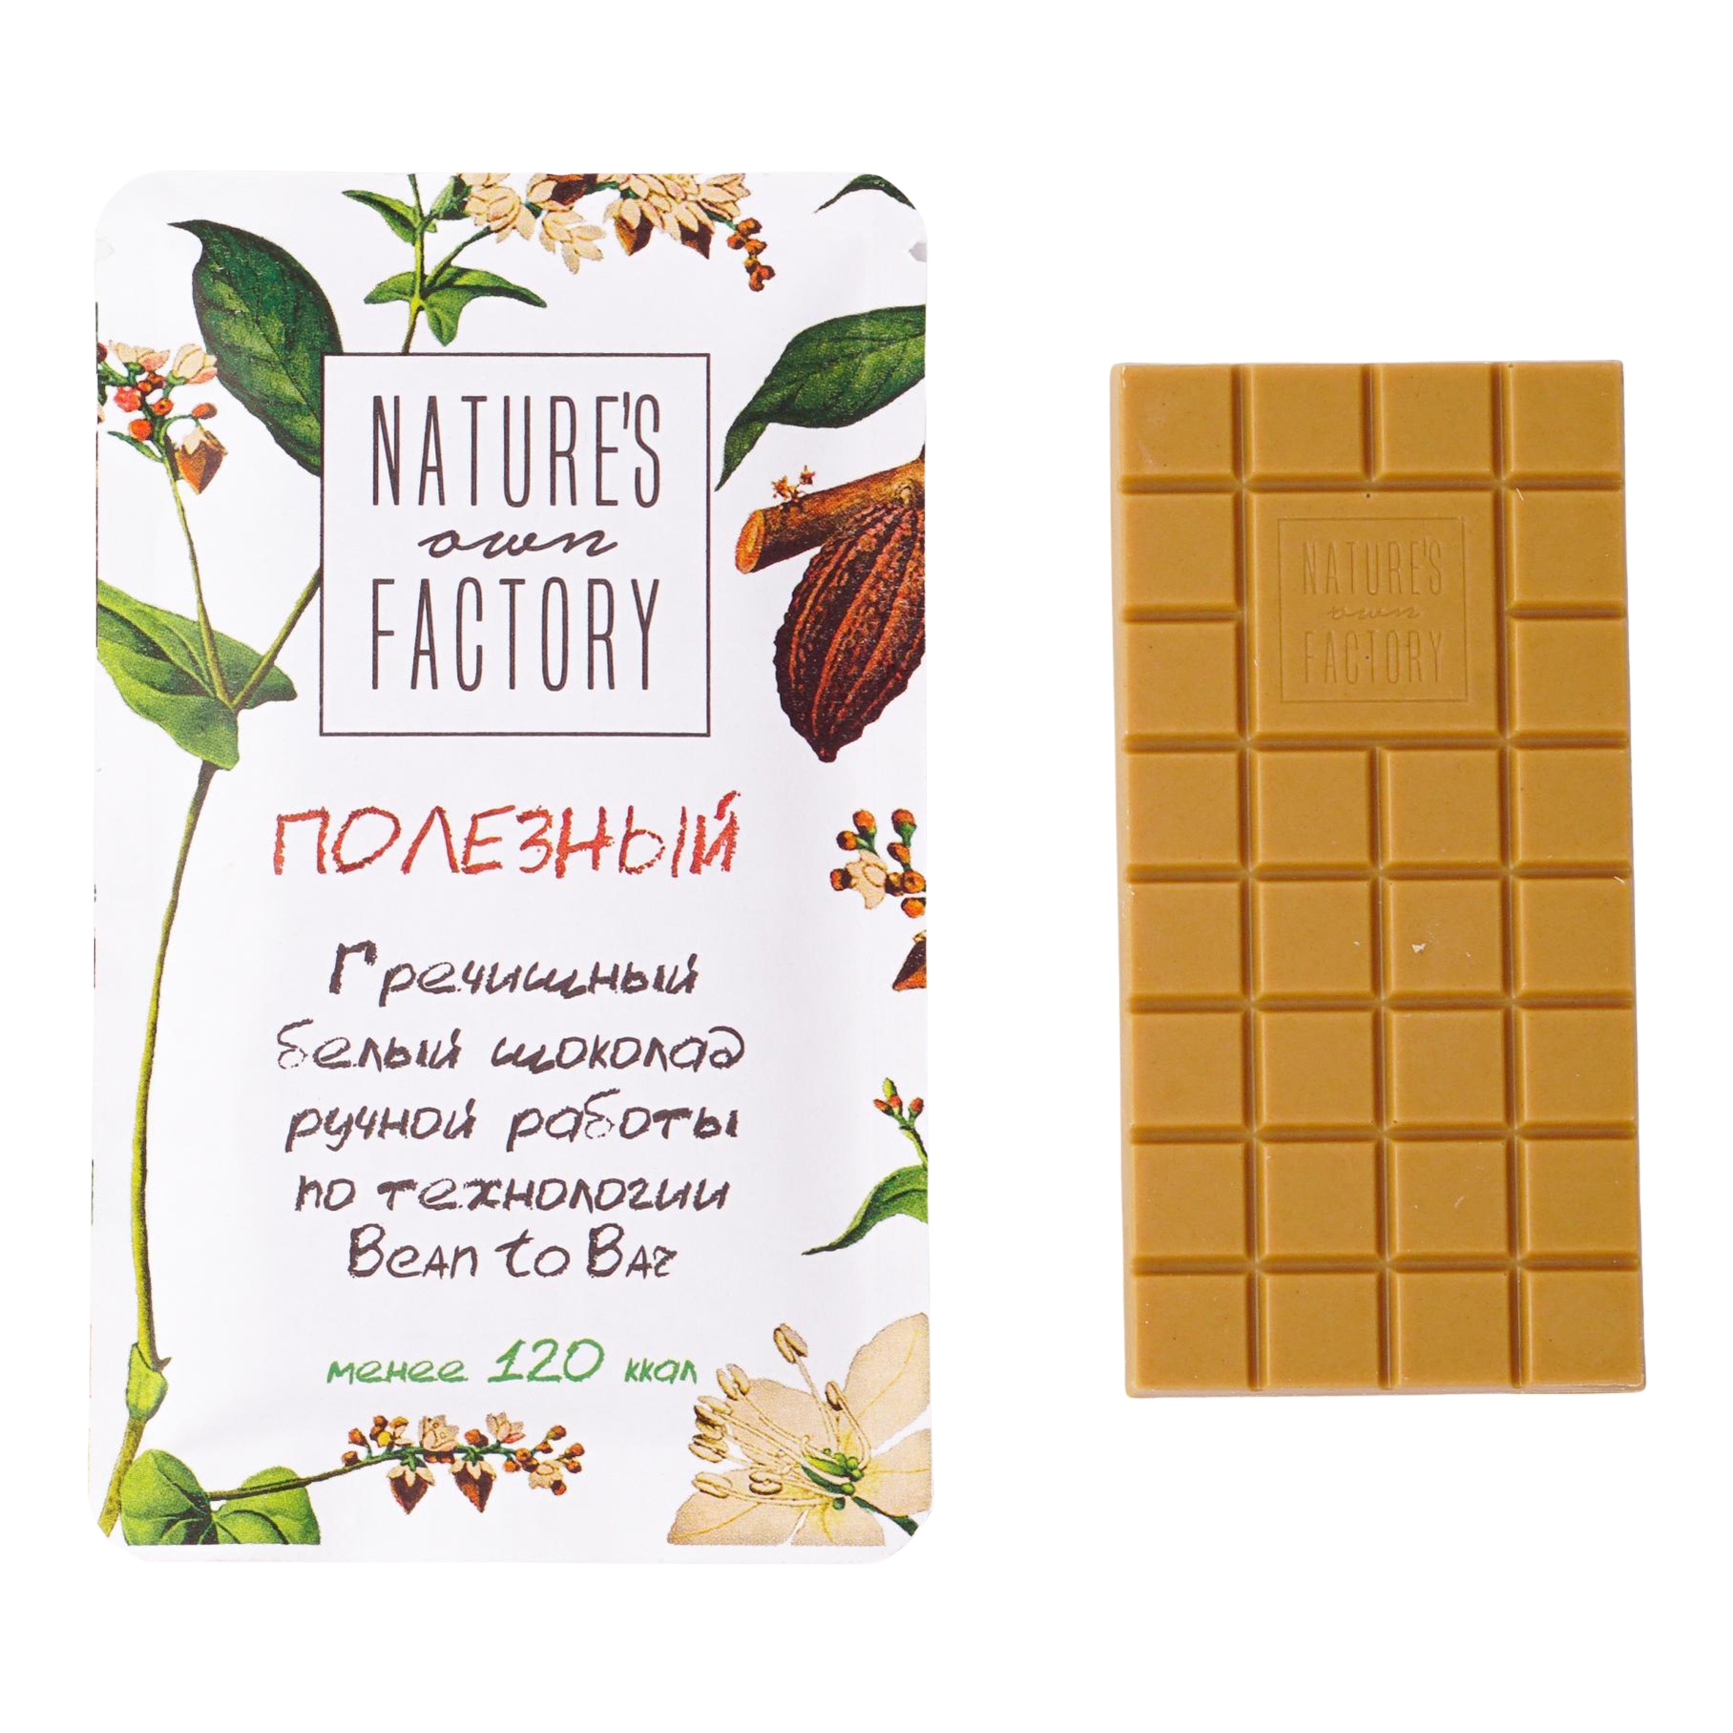 Шоколад Nature's Own Factory Гречишный белый 20 г